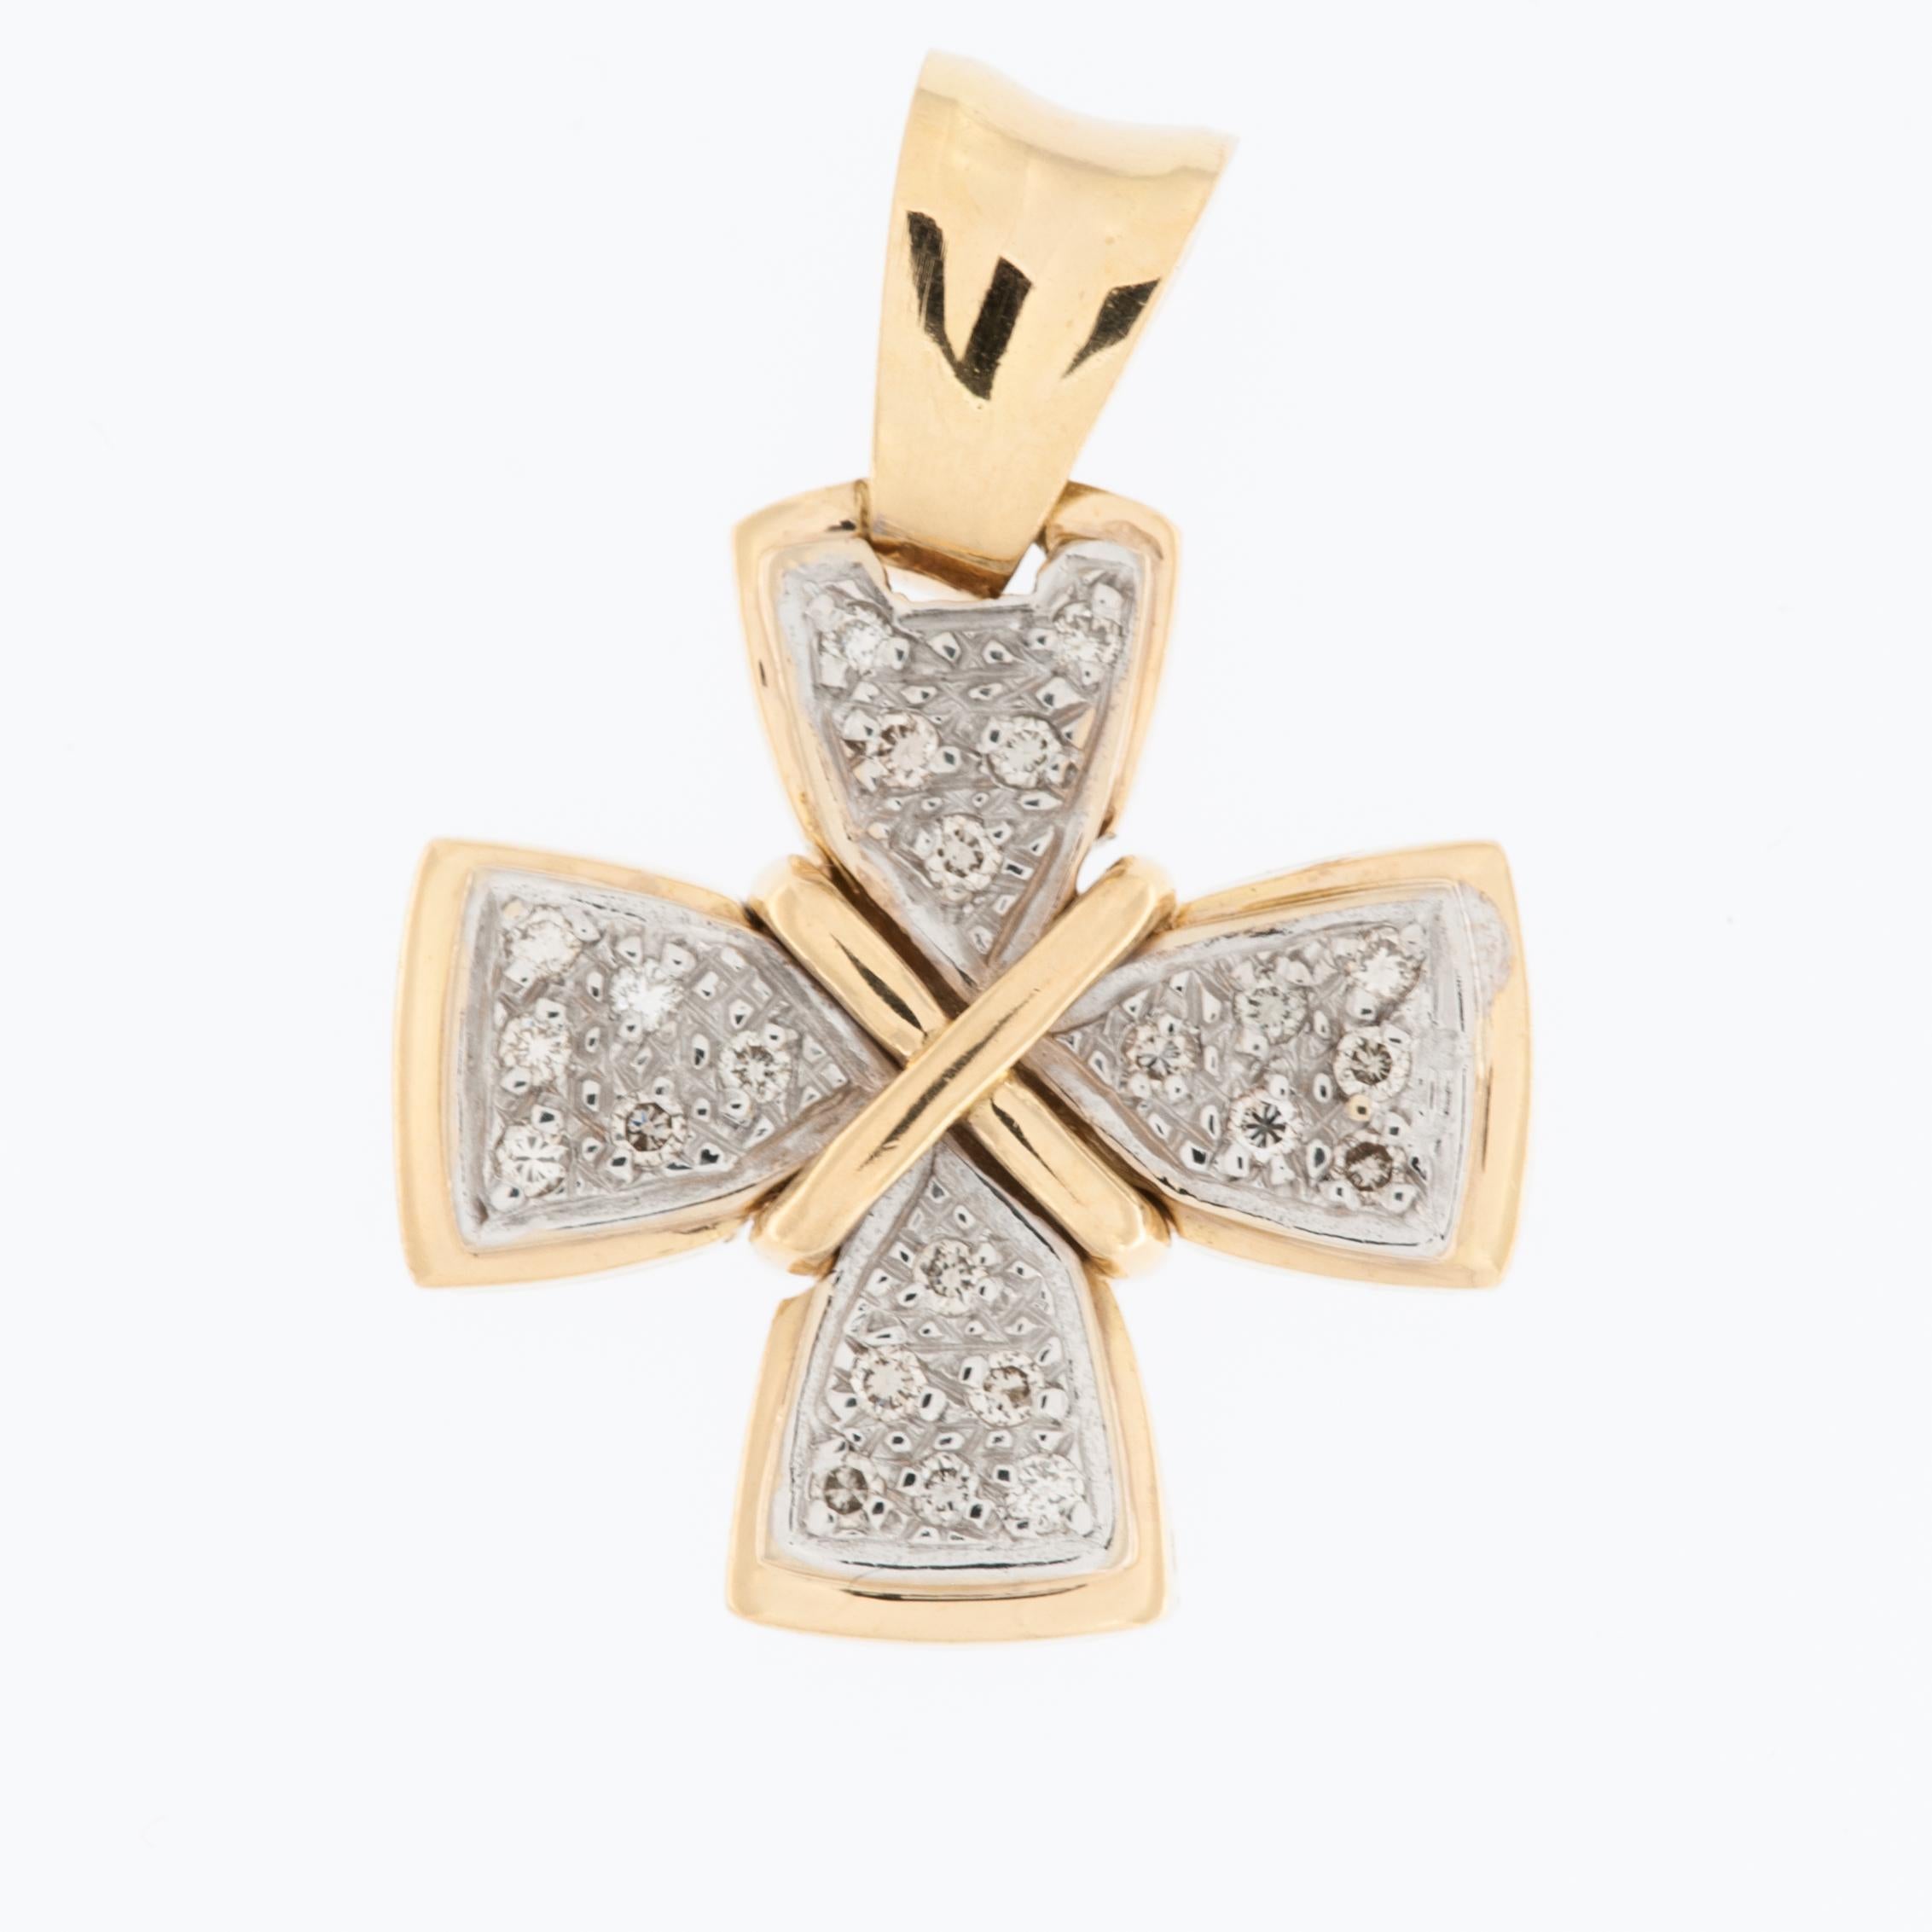 La croix française en or 18kt avec diamants est un bijou magnifique et élégant qui associe le symbolisme classique d'une croix à des matériaux luxueux et à des pierres précieuses étincelantes. 

Cette croix est conçue en forme de croix grecque, qui